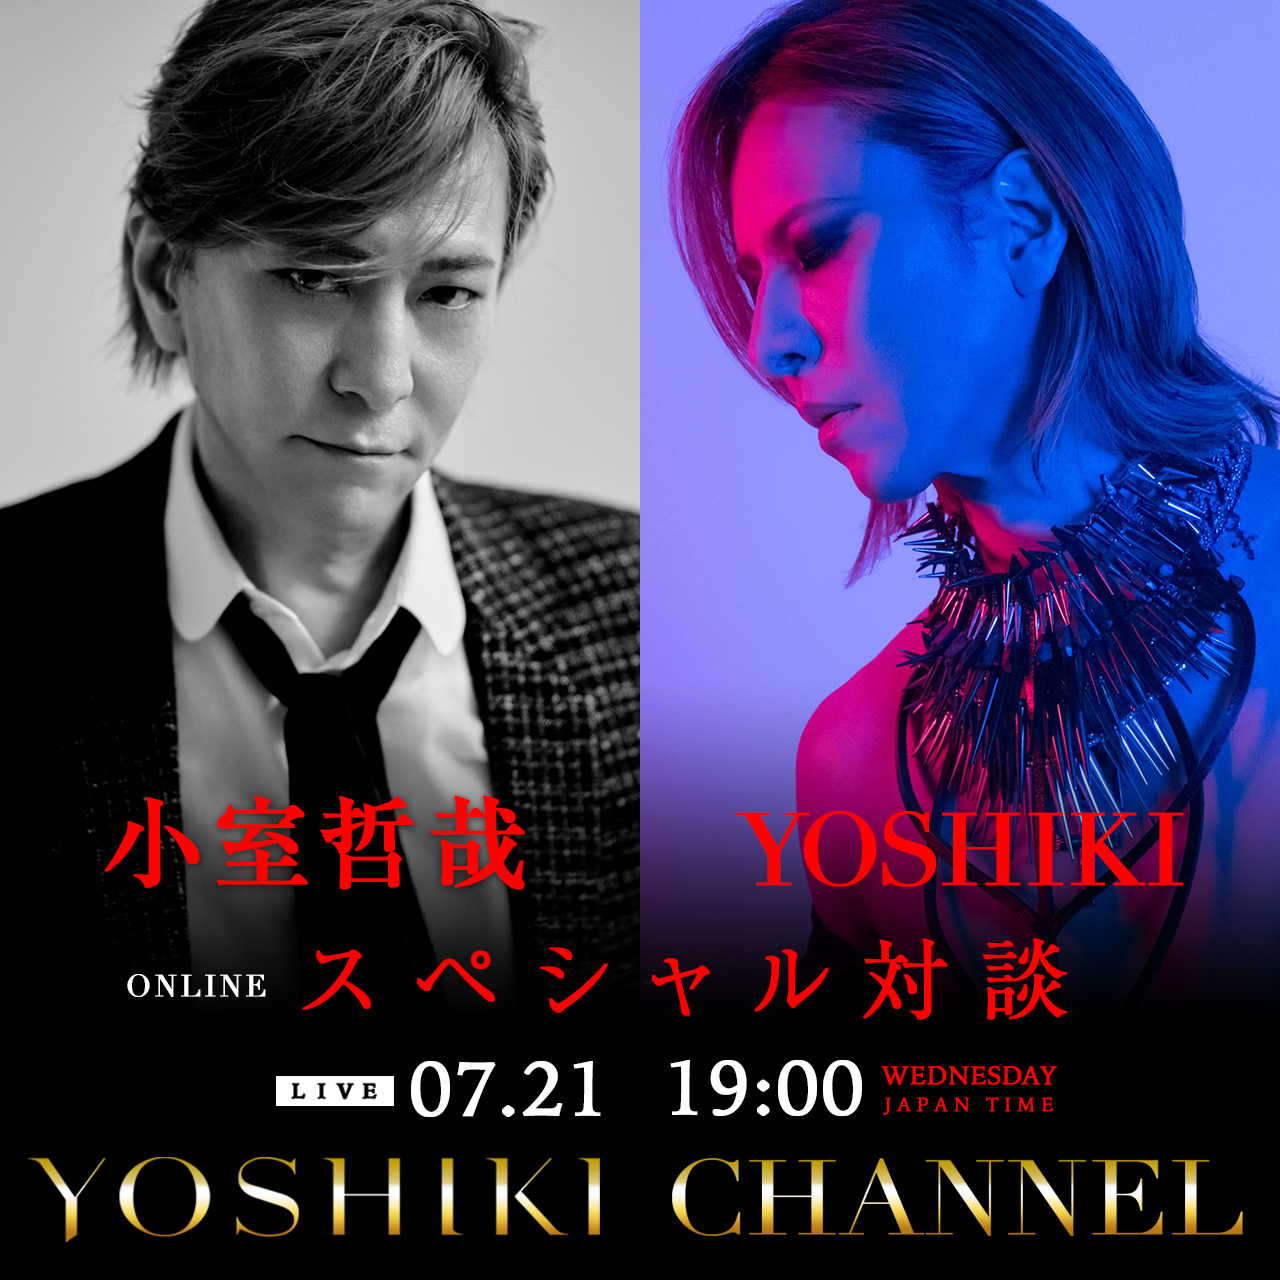 小室哲哉 Yoshiki 日本を代表する音楽家同士の対談決定 Yoshiki Pr事務局のプレスリリース